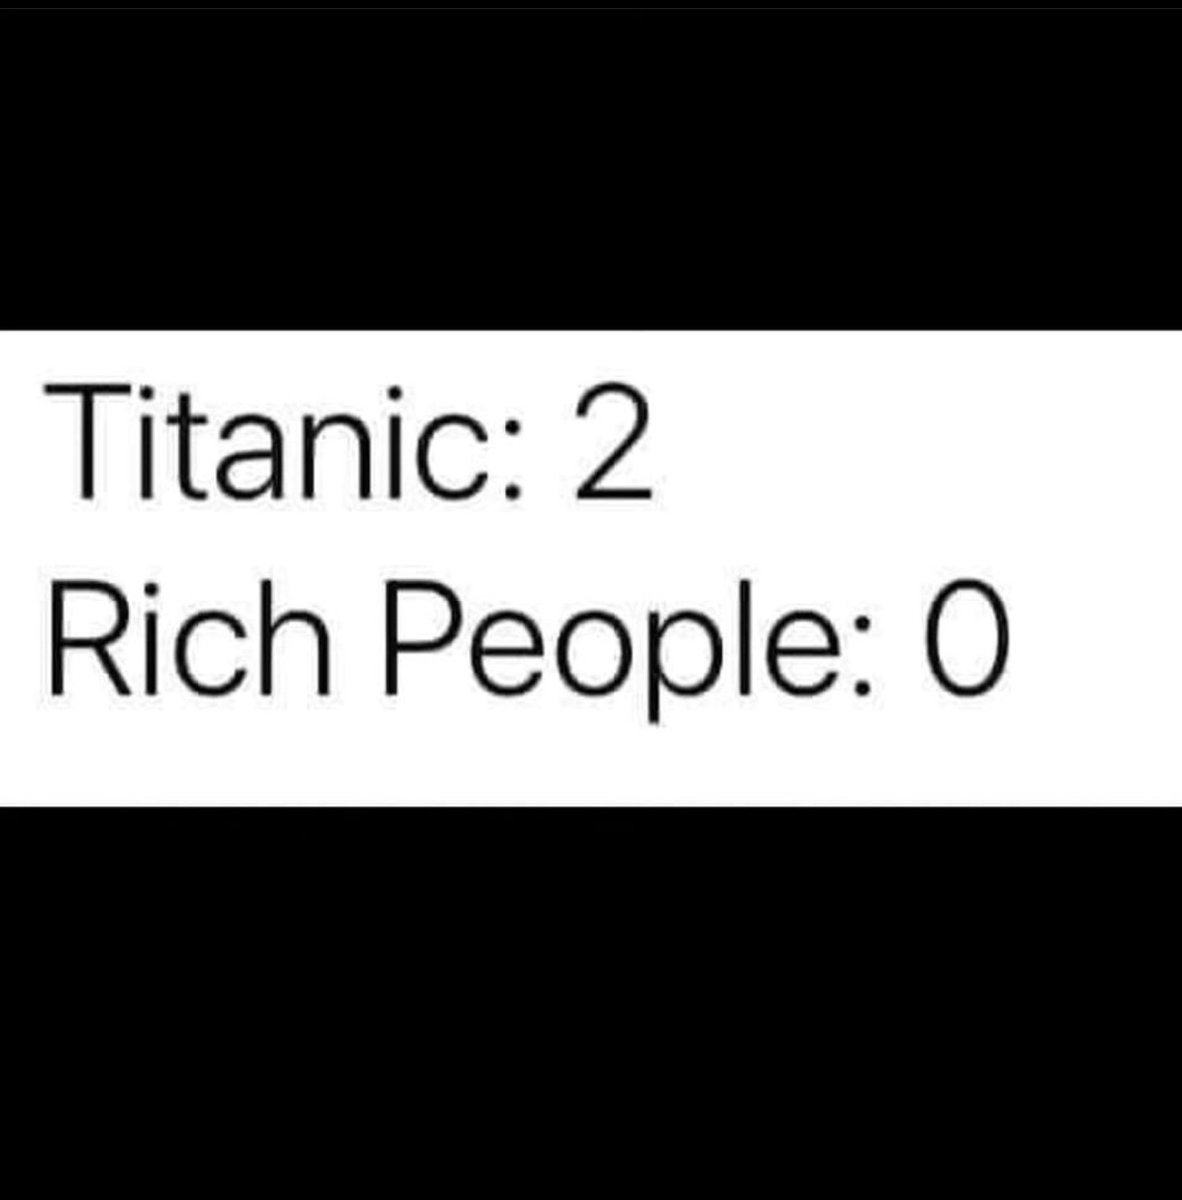 #Titan #Titanic #titanicsubmarine #titanicsubmersible #titanicsub #titanicsubmarinememe